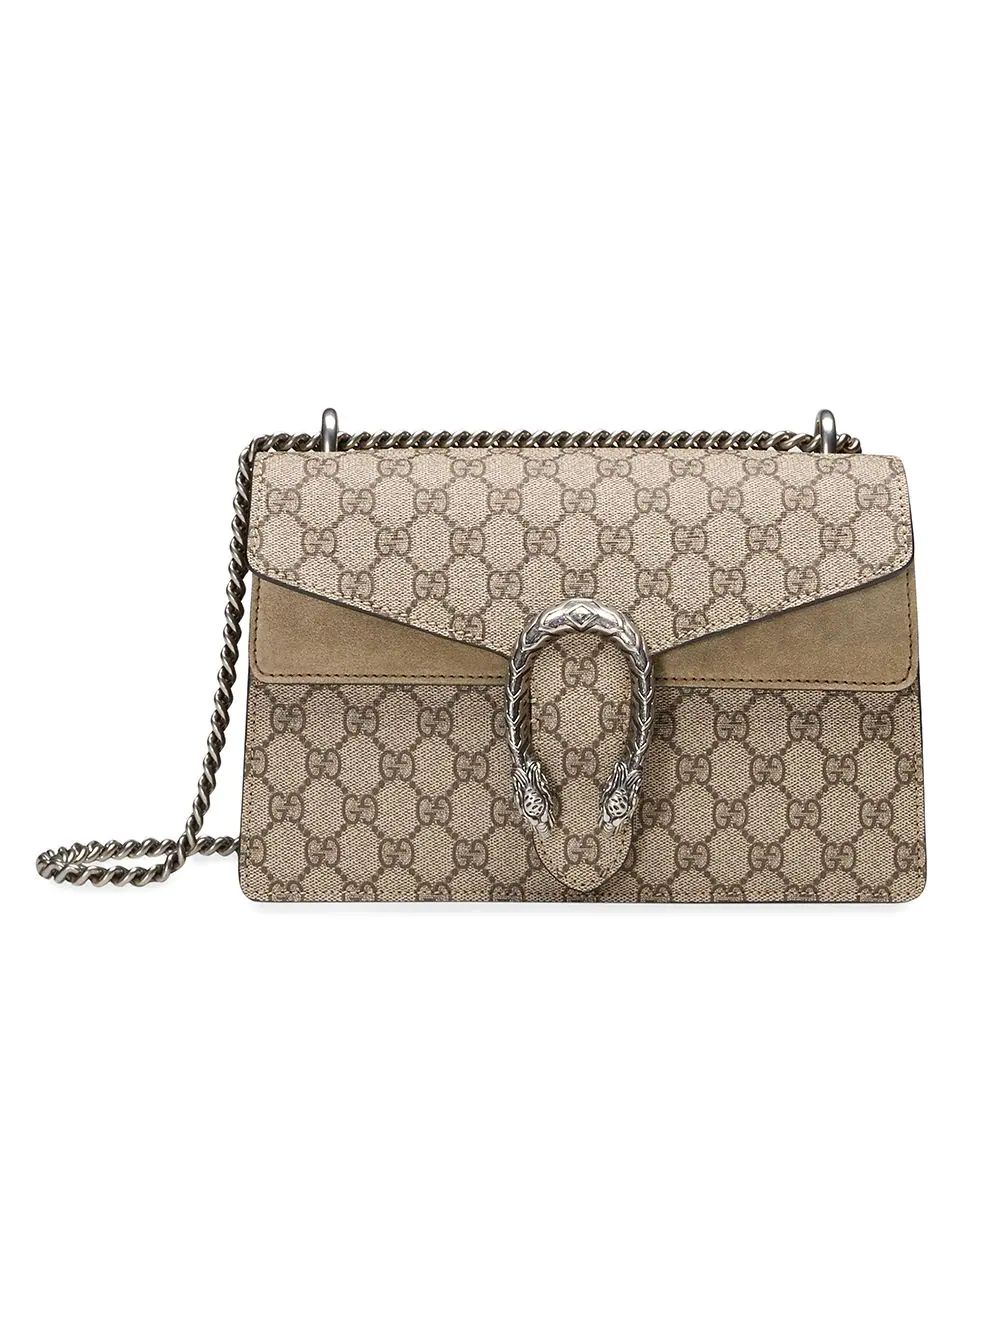 Gucci Dionysus GG Supreme Shoulder Bag - Farfetch | Farfetch Global